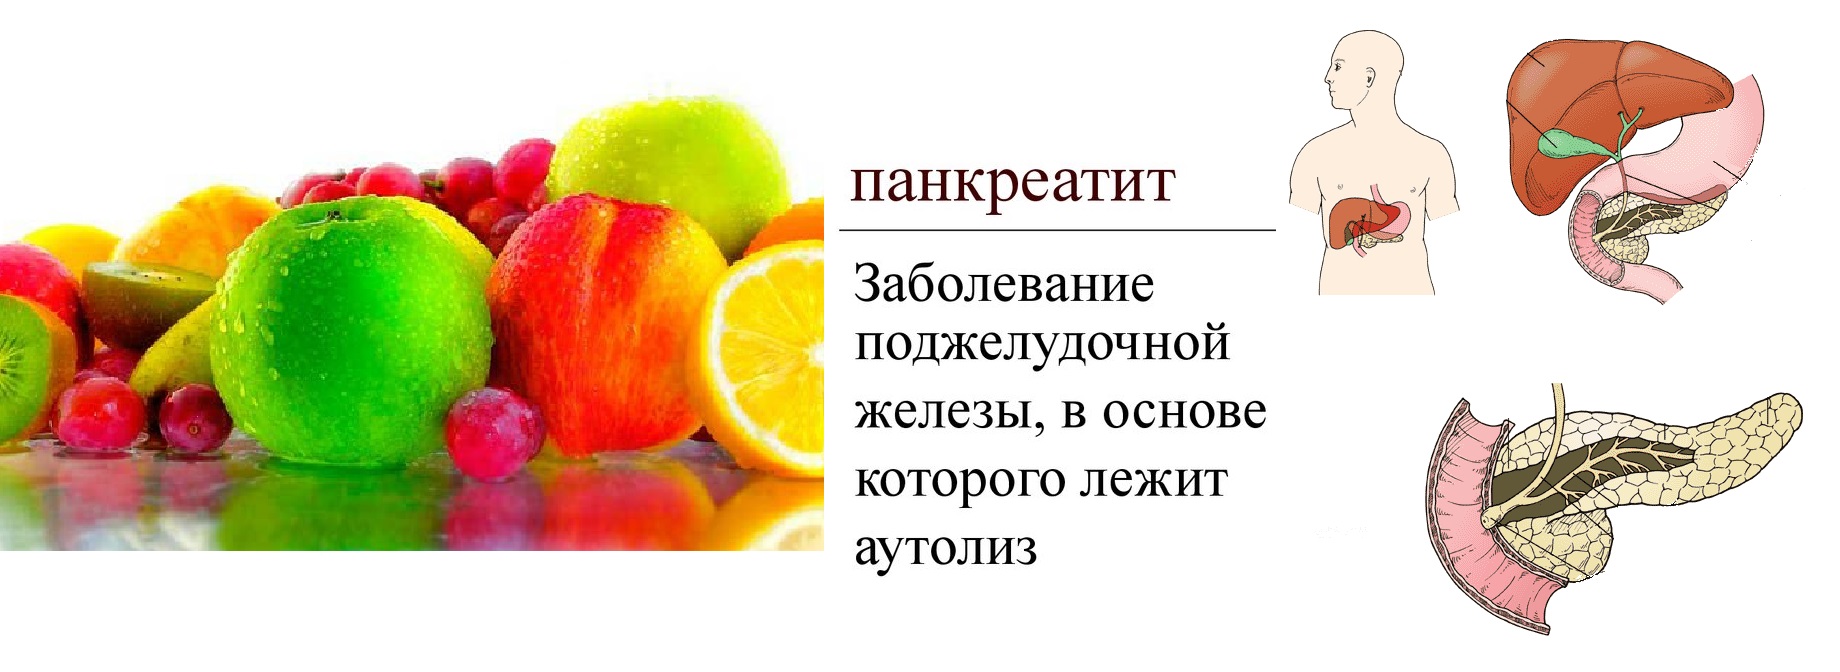 Овощи фрукты при панкреатите поджелудочной железы. Панкреатит фрукты. Кушать фрукты при панкреатите. Фрукты для поджелудочной железы. Разрешенные фрукты при панкреатите.